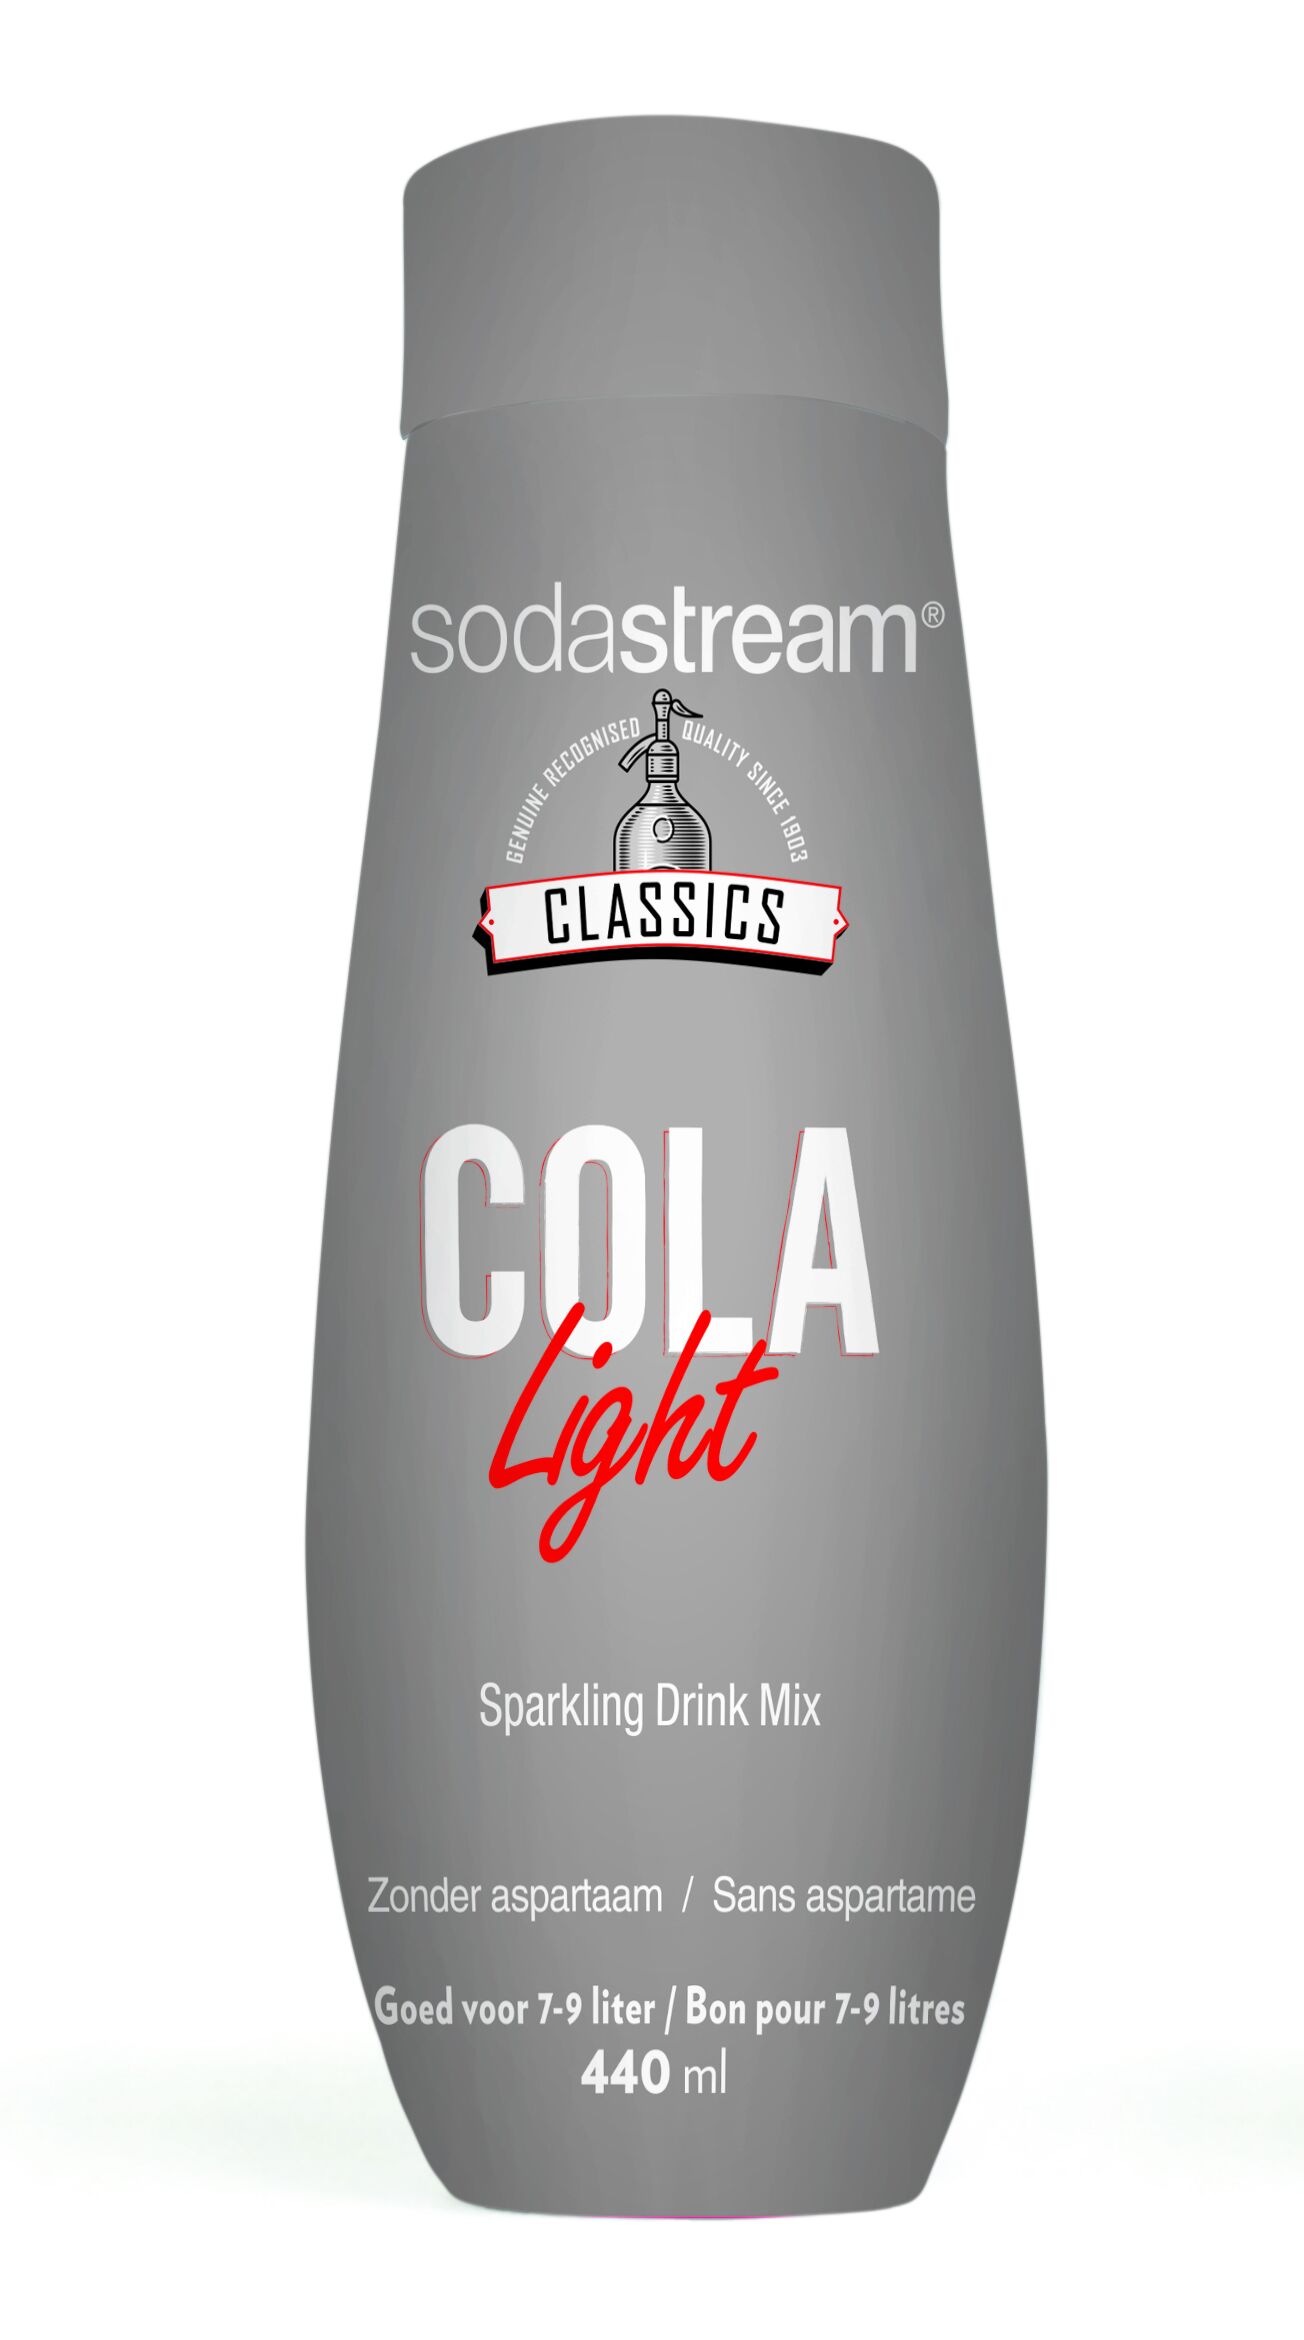 Sodastream Classic cola light 440Ml